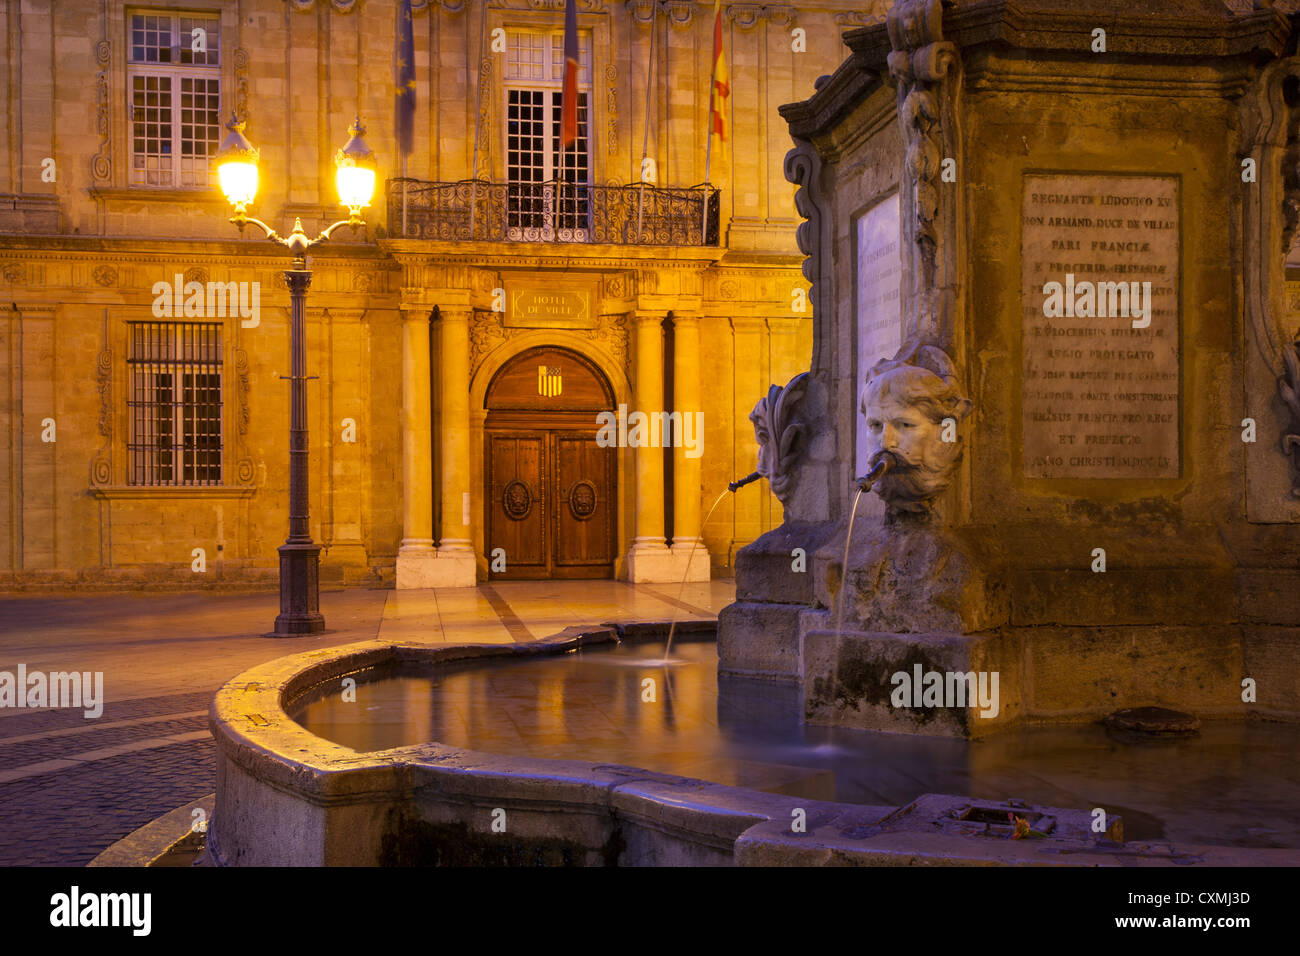 La fontana e la facciata del Hotel de Ville a Place de l'Hotel de Ville, Aix-en-Provence, Francia Foto Stock